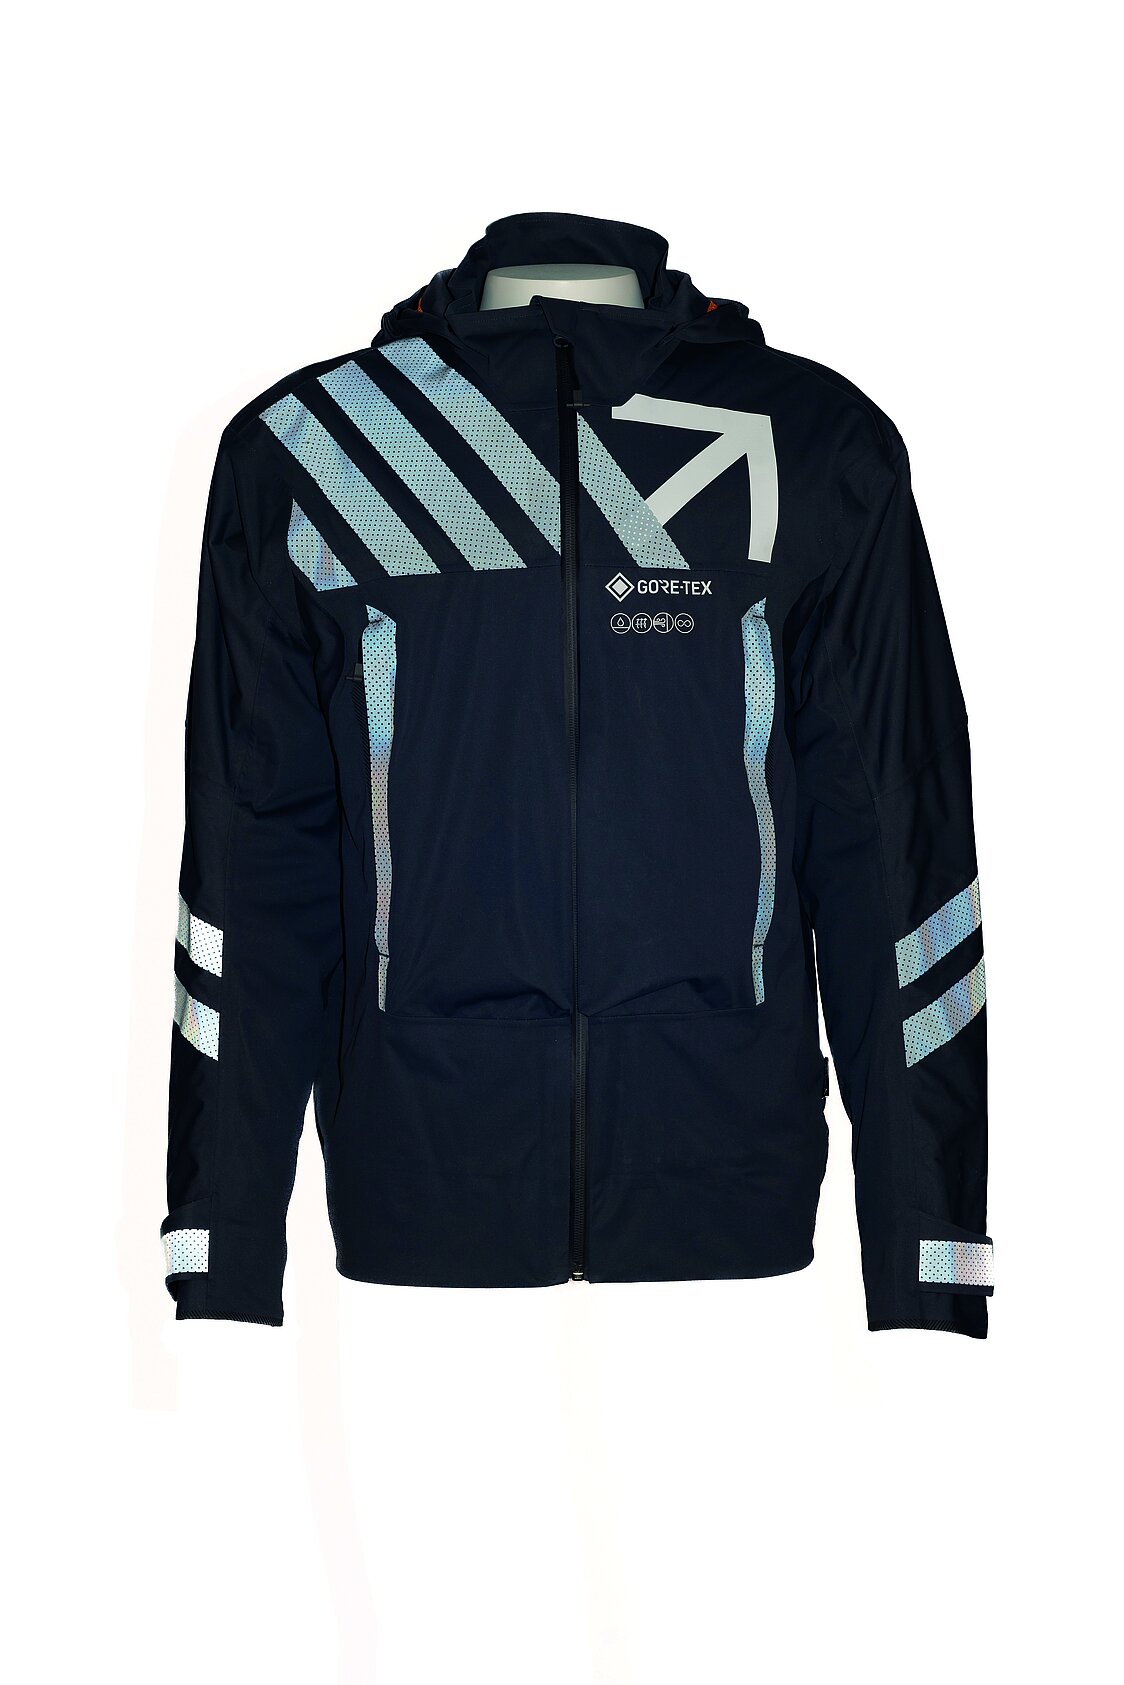 Blaue Jacke mit reflektierenden Streifen aus Gore-Tex-Material